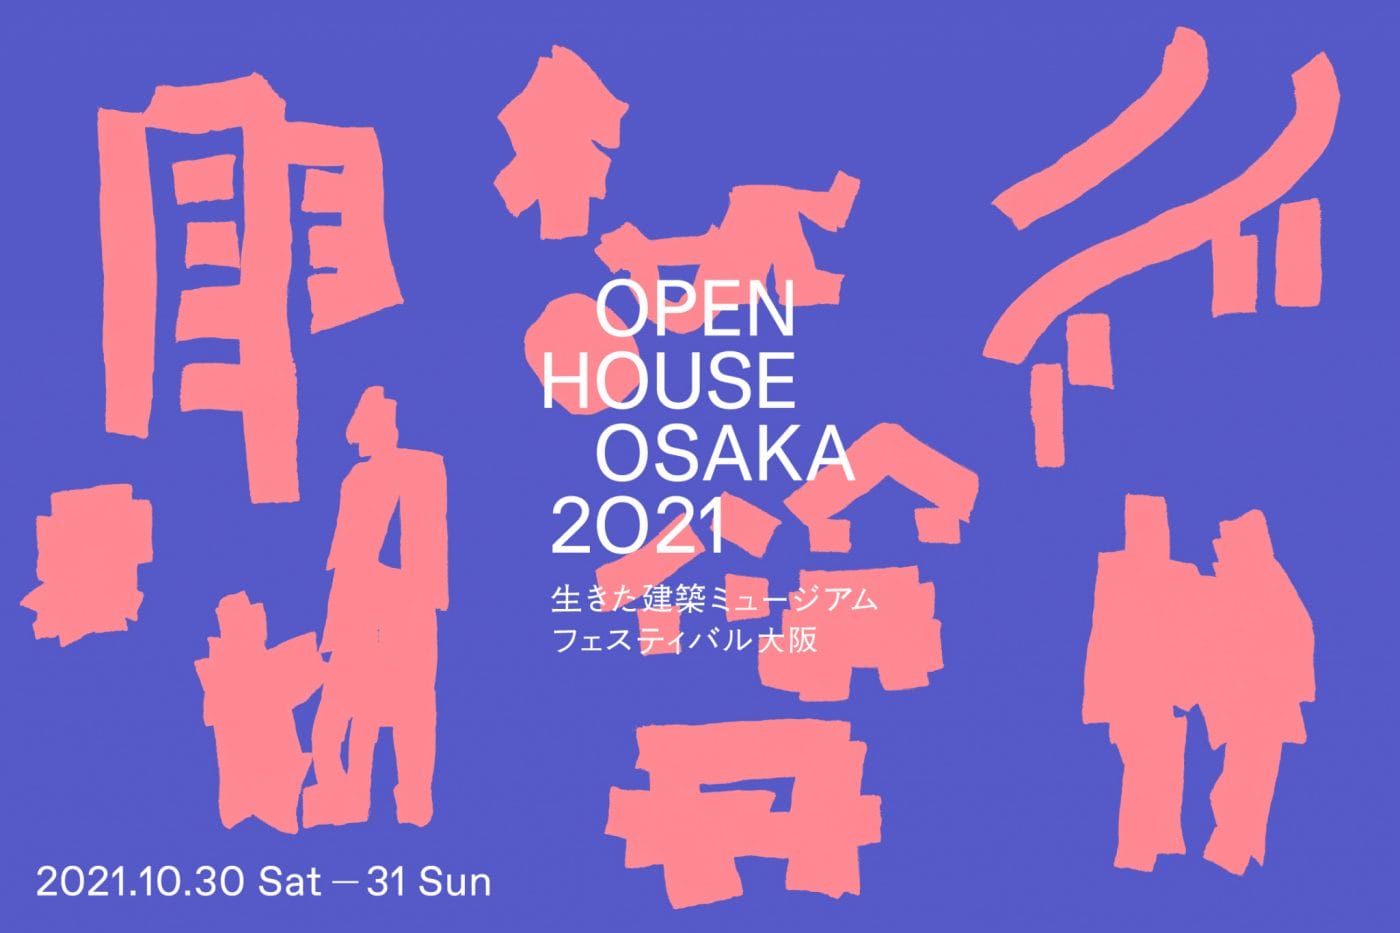 大阪の魅力ある建築を無料で公開するイベント「生きた建築ミュージアムフェスティバル大阪」、今年はオンラインを中心にリアルのプログラムも開催。